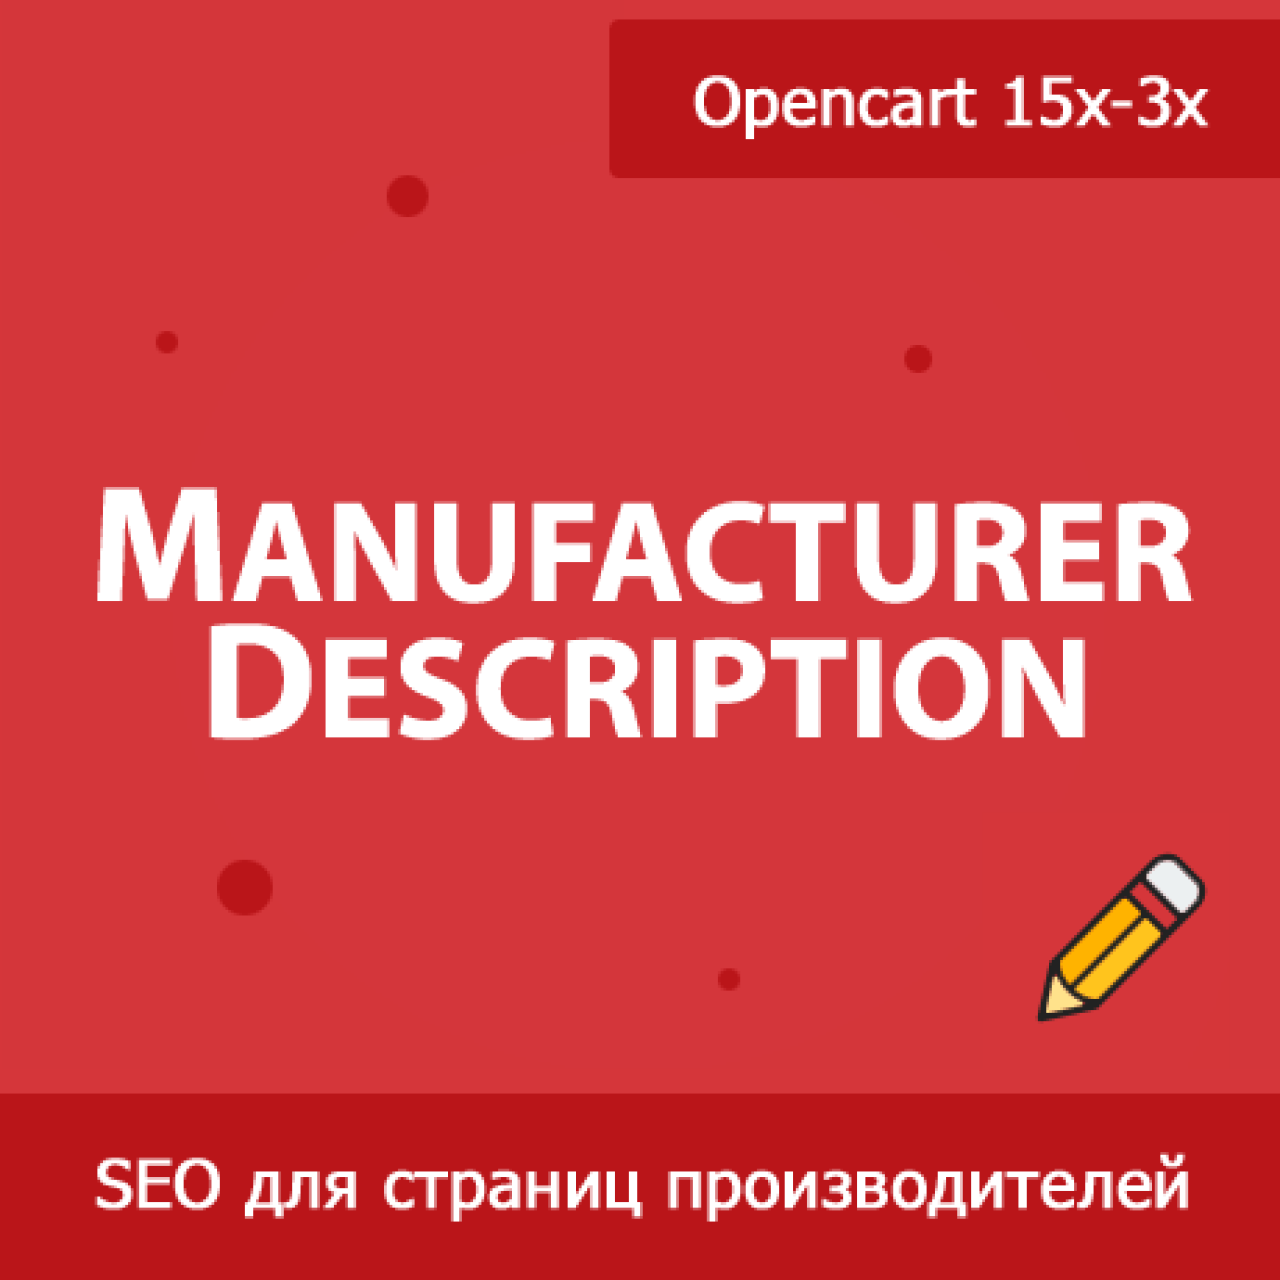 Manufacturer Description - описание и мета-теги для производителя из категории Админка для CMS OpenCart (ОпенКарт)